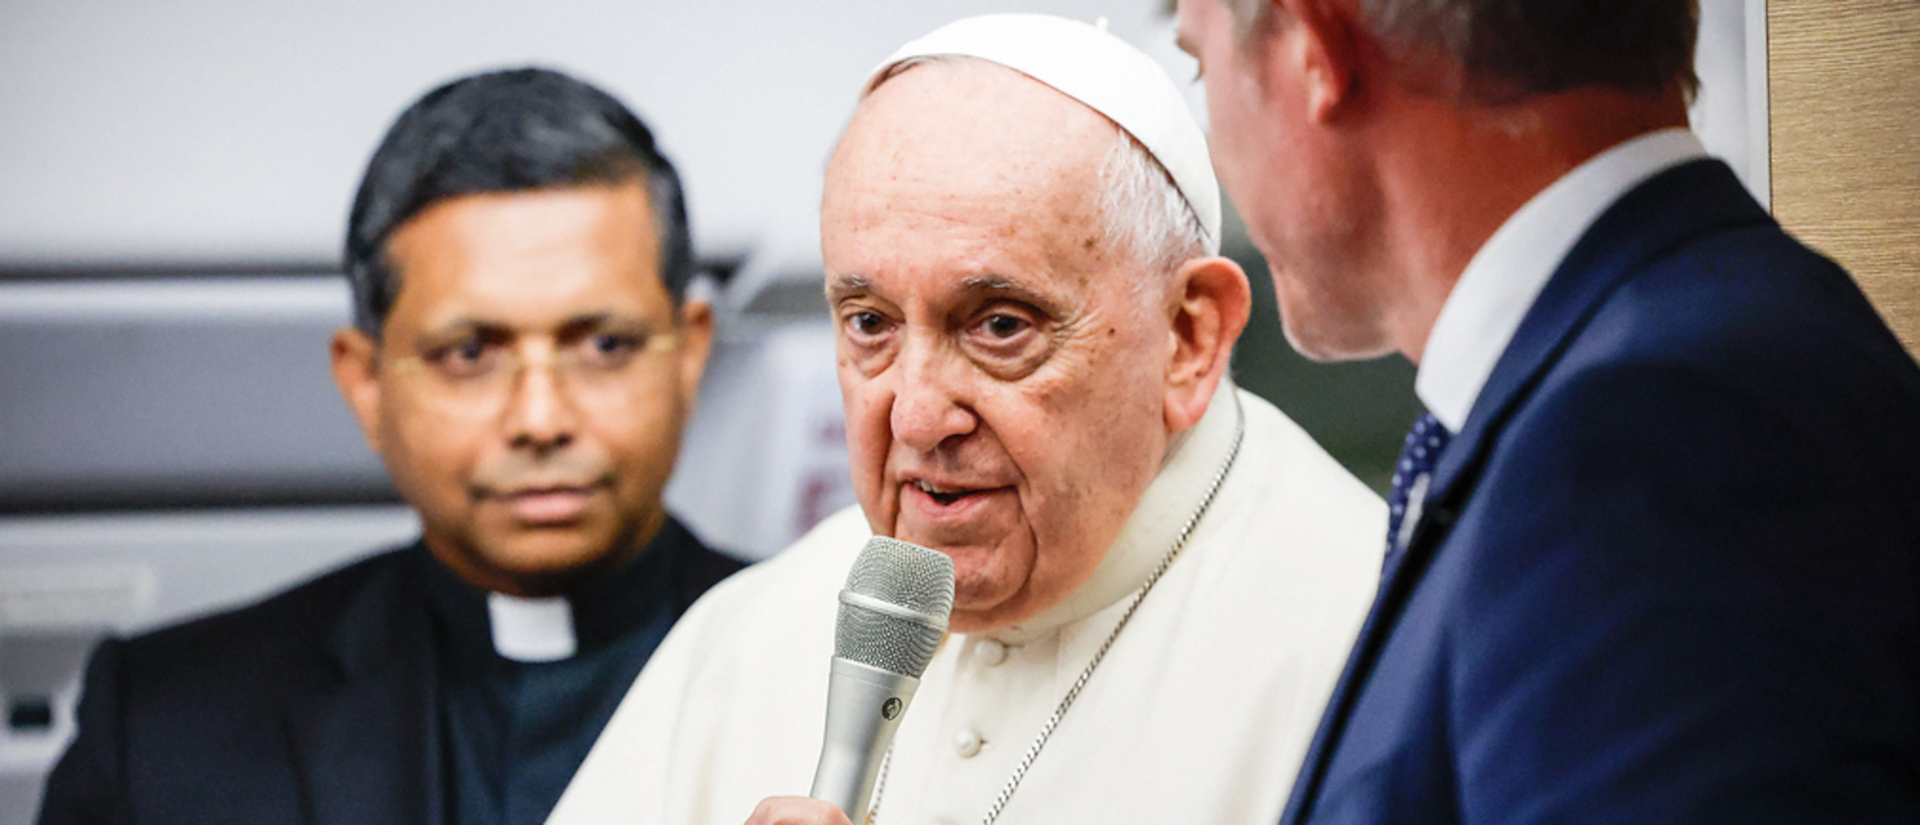 Papst Franziskus spricht gerne spontan zu Medienschaffenden.